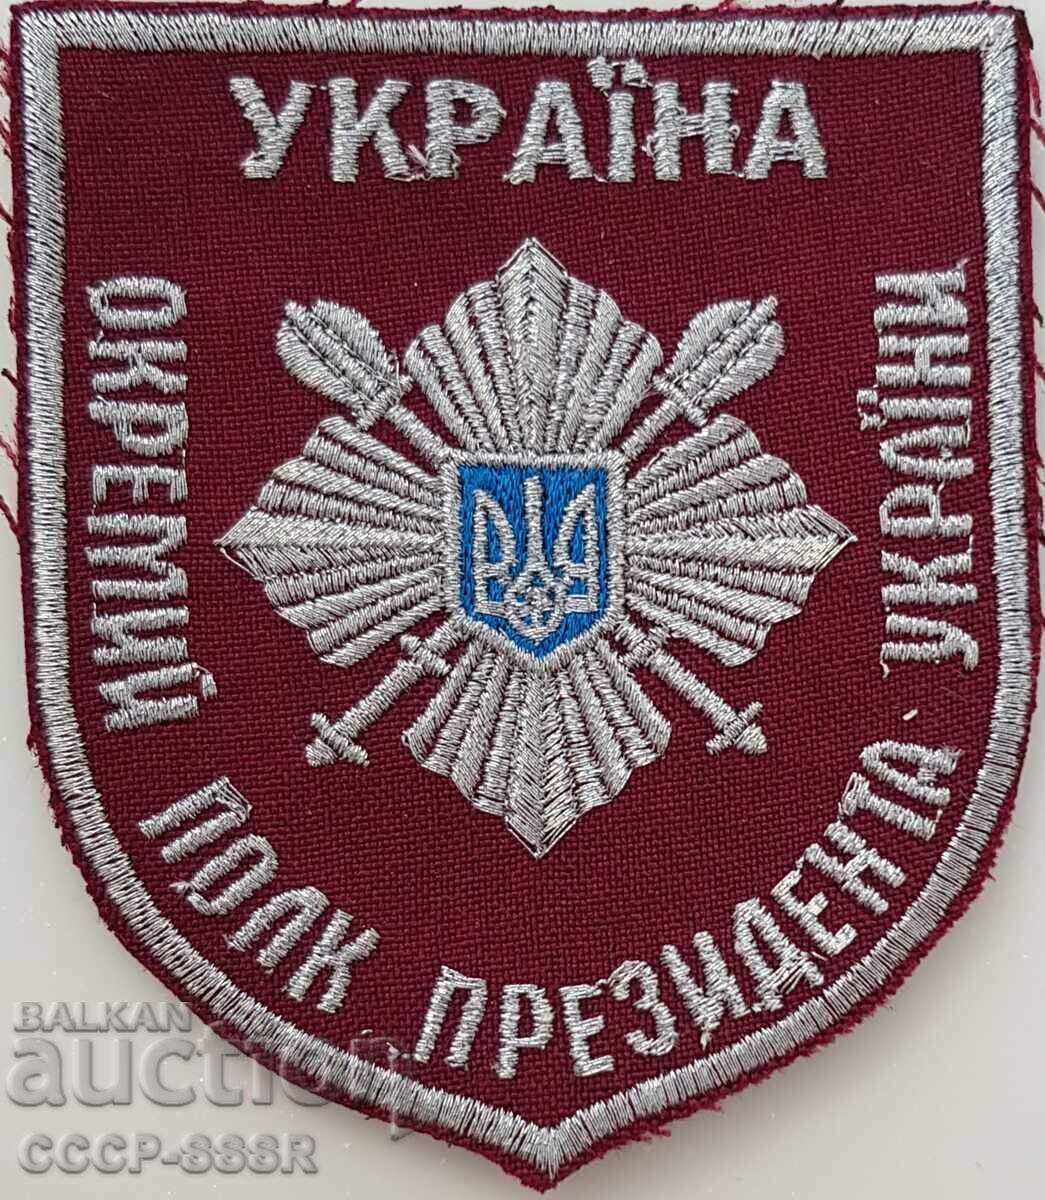 Украйна, шеврон,  нашивка на униформа, Президентски полк